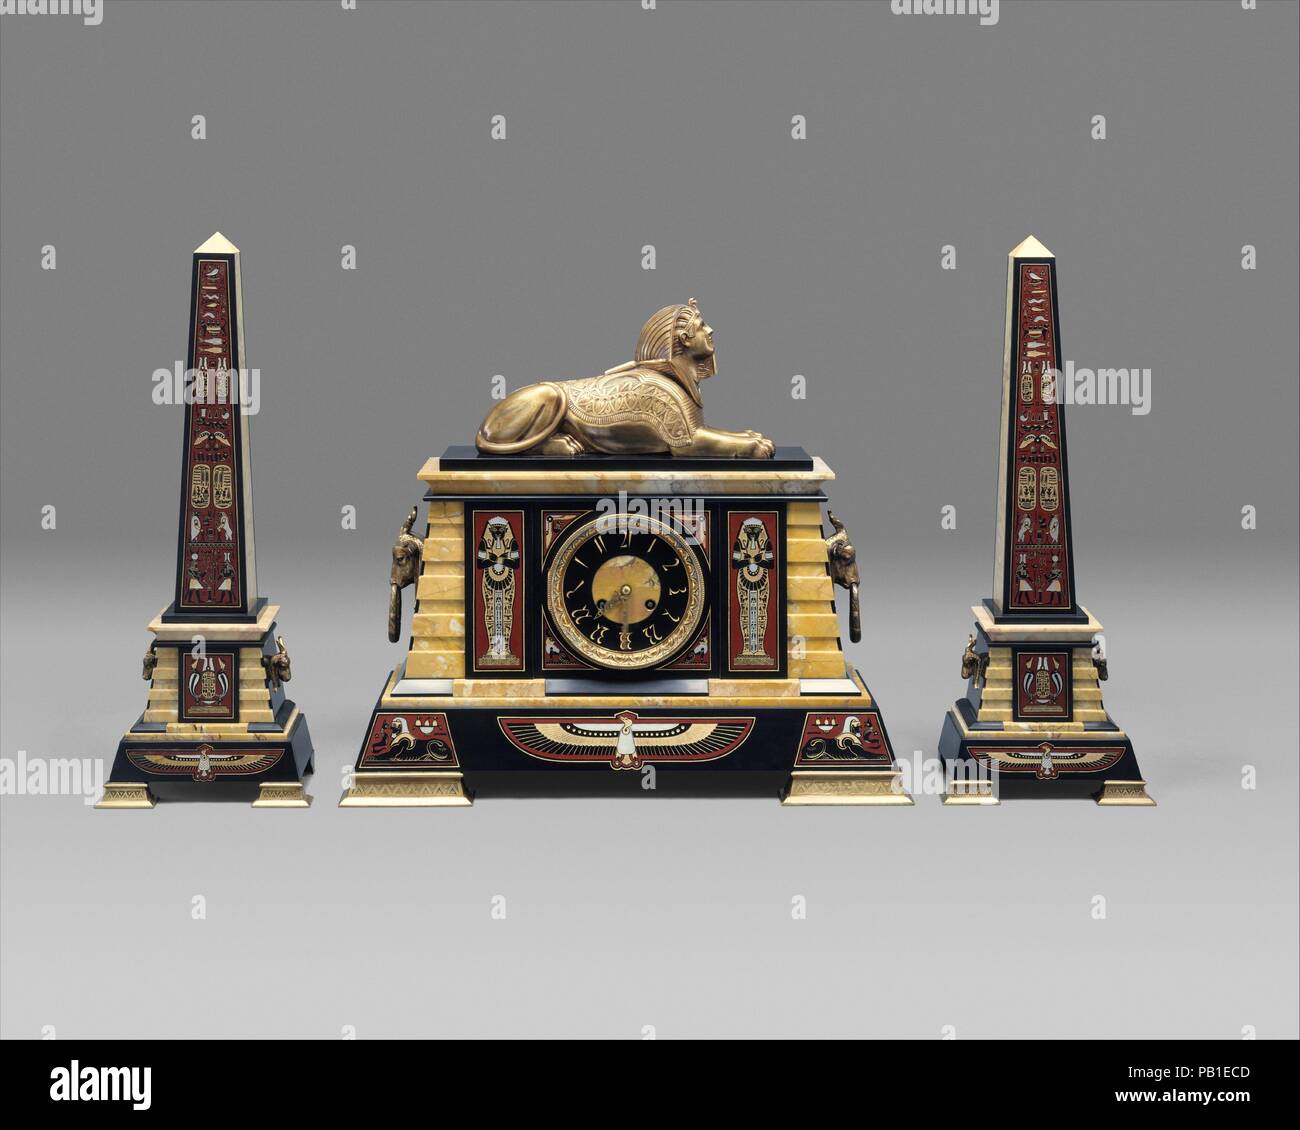 Reloj. Cultura: American. Dimensiones: 18 1/8 x 20 1/8 x 7 3/4 in. (46 x 51,1 x 19,7 cm). Maker: Tiffany & Co. (1837-presente). Fecha: ca. 1885. Tiffany & Co. y mármol ormolu comercializado este conjunto de mantel en aproximadamente 1885. El conjunto, compuesto de un reloj y un par de obeliscos decorativos, representa un popular más que una idea arqueológico de arte Egipcio: los jeroglíficos en los obeliscos y las esfinges del reloj no llevaría el escrutinio de un egiptólogo. Museo: Museo Metropolitano de Arte, Nueva York, Estados Unidos. Foto de stock